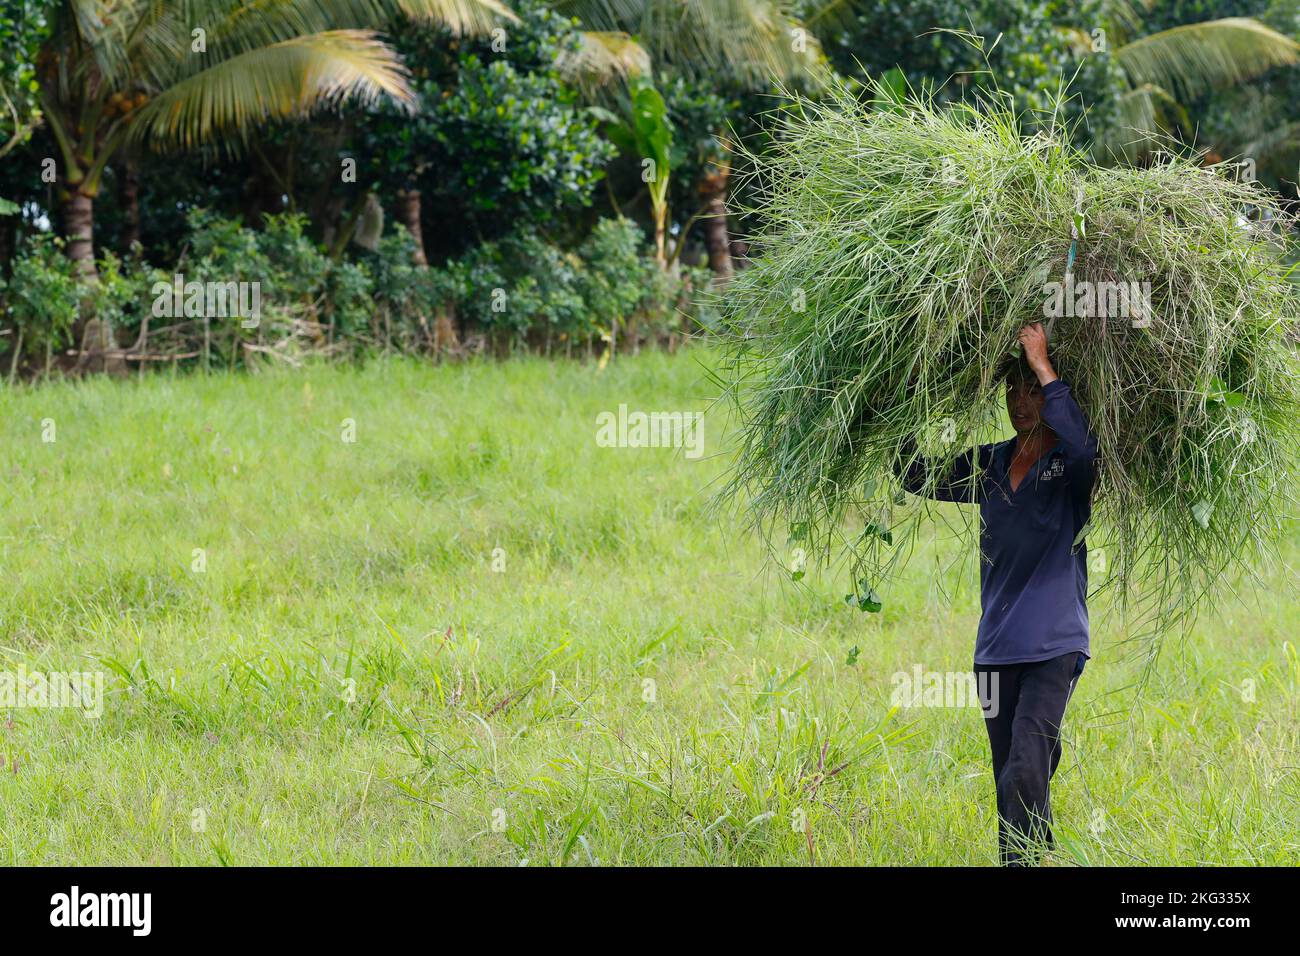 Landwirtschaft in Vietnam. Mann, der Heu auf dem Kopf trägt. Tan Chau. Vietnam. Stockfoto